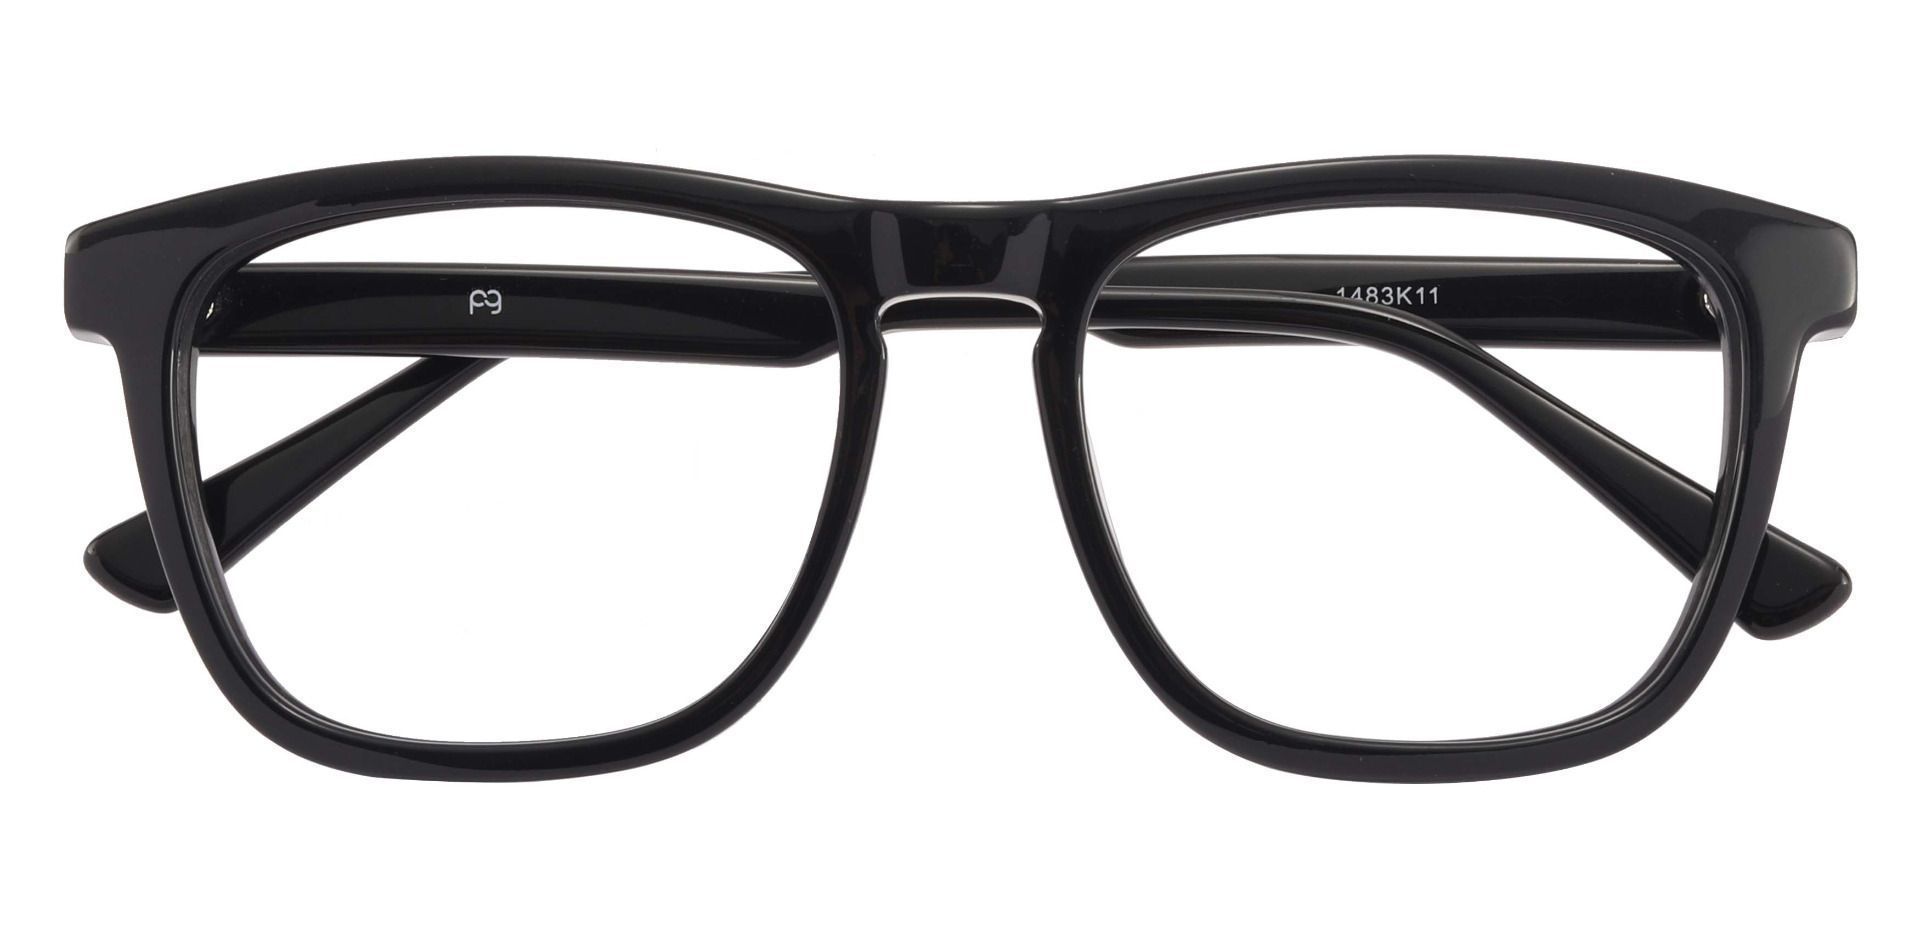 Reno Square Prescription Glasses - Black